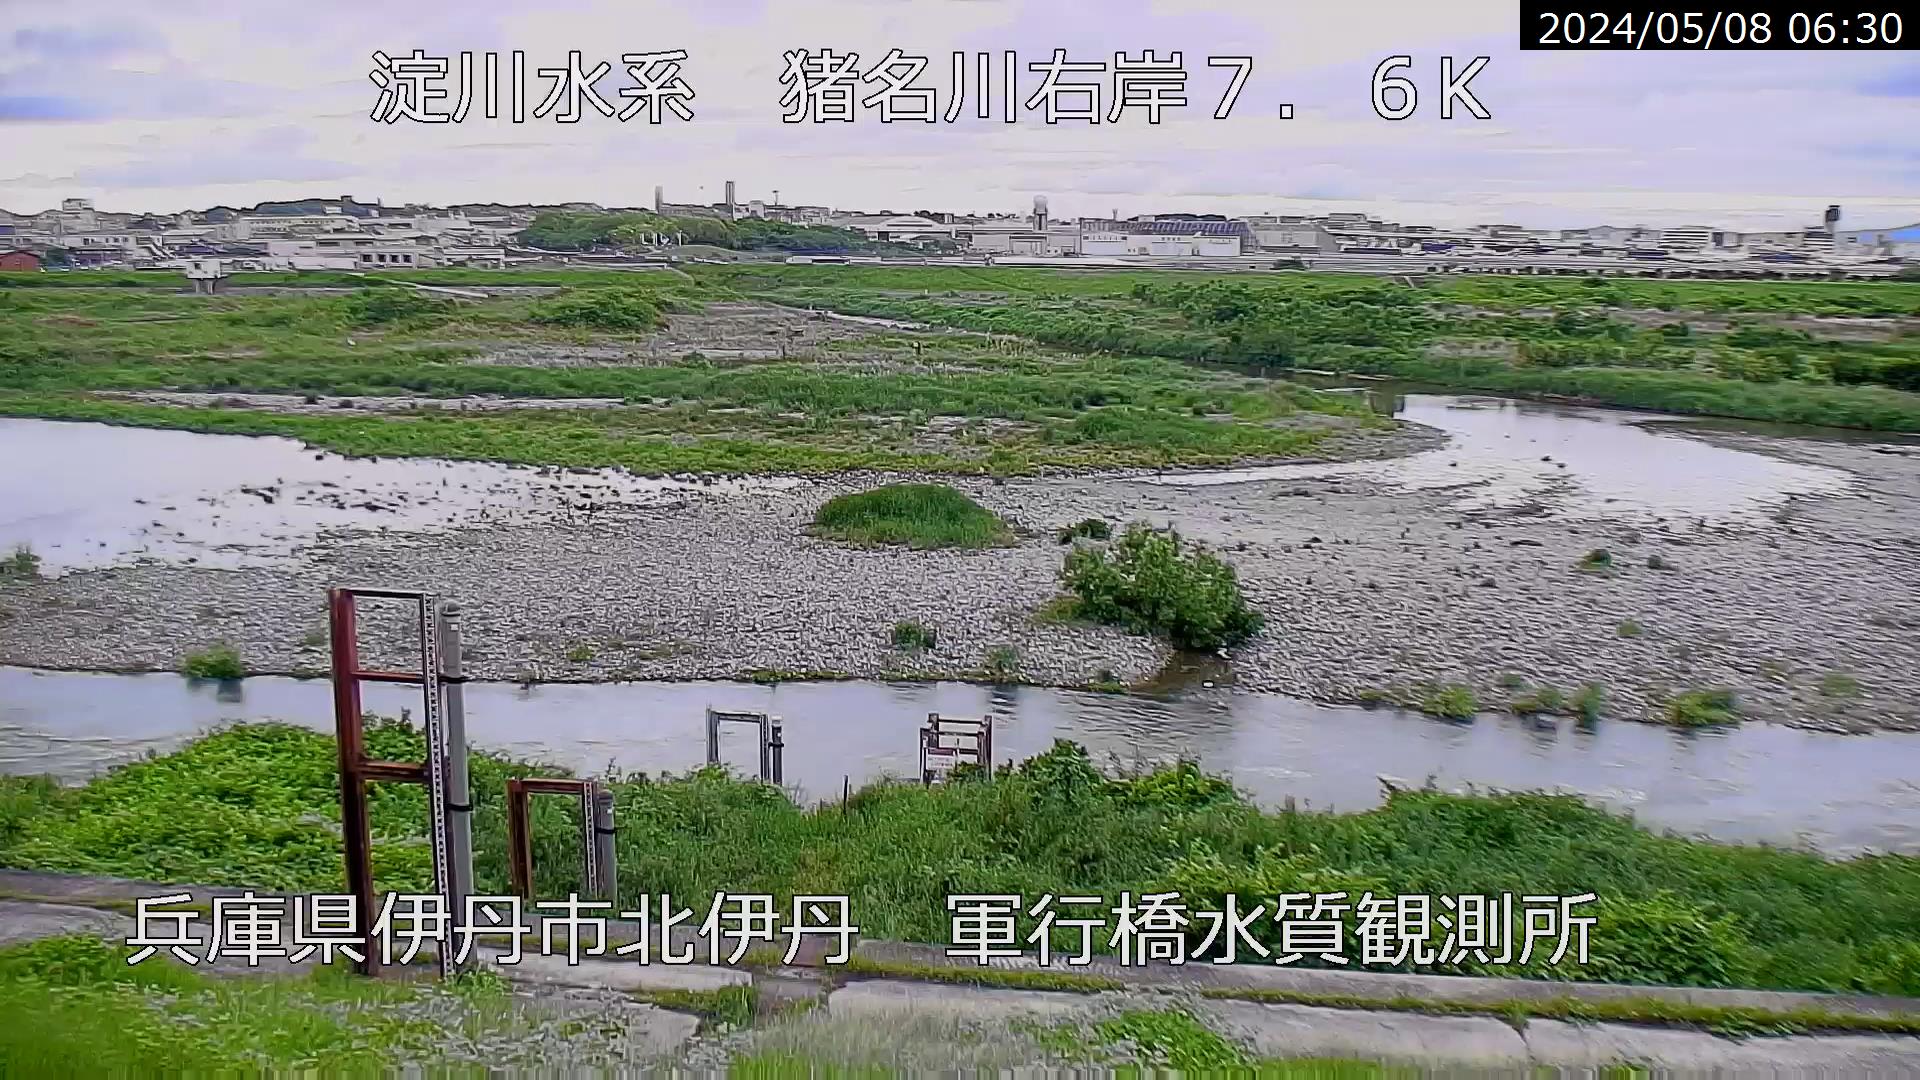 兵庫県の河川ライブカメラ｢猪名川 伊丹市北伊丹｣のライブ画像